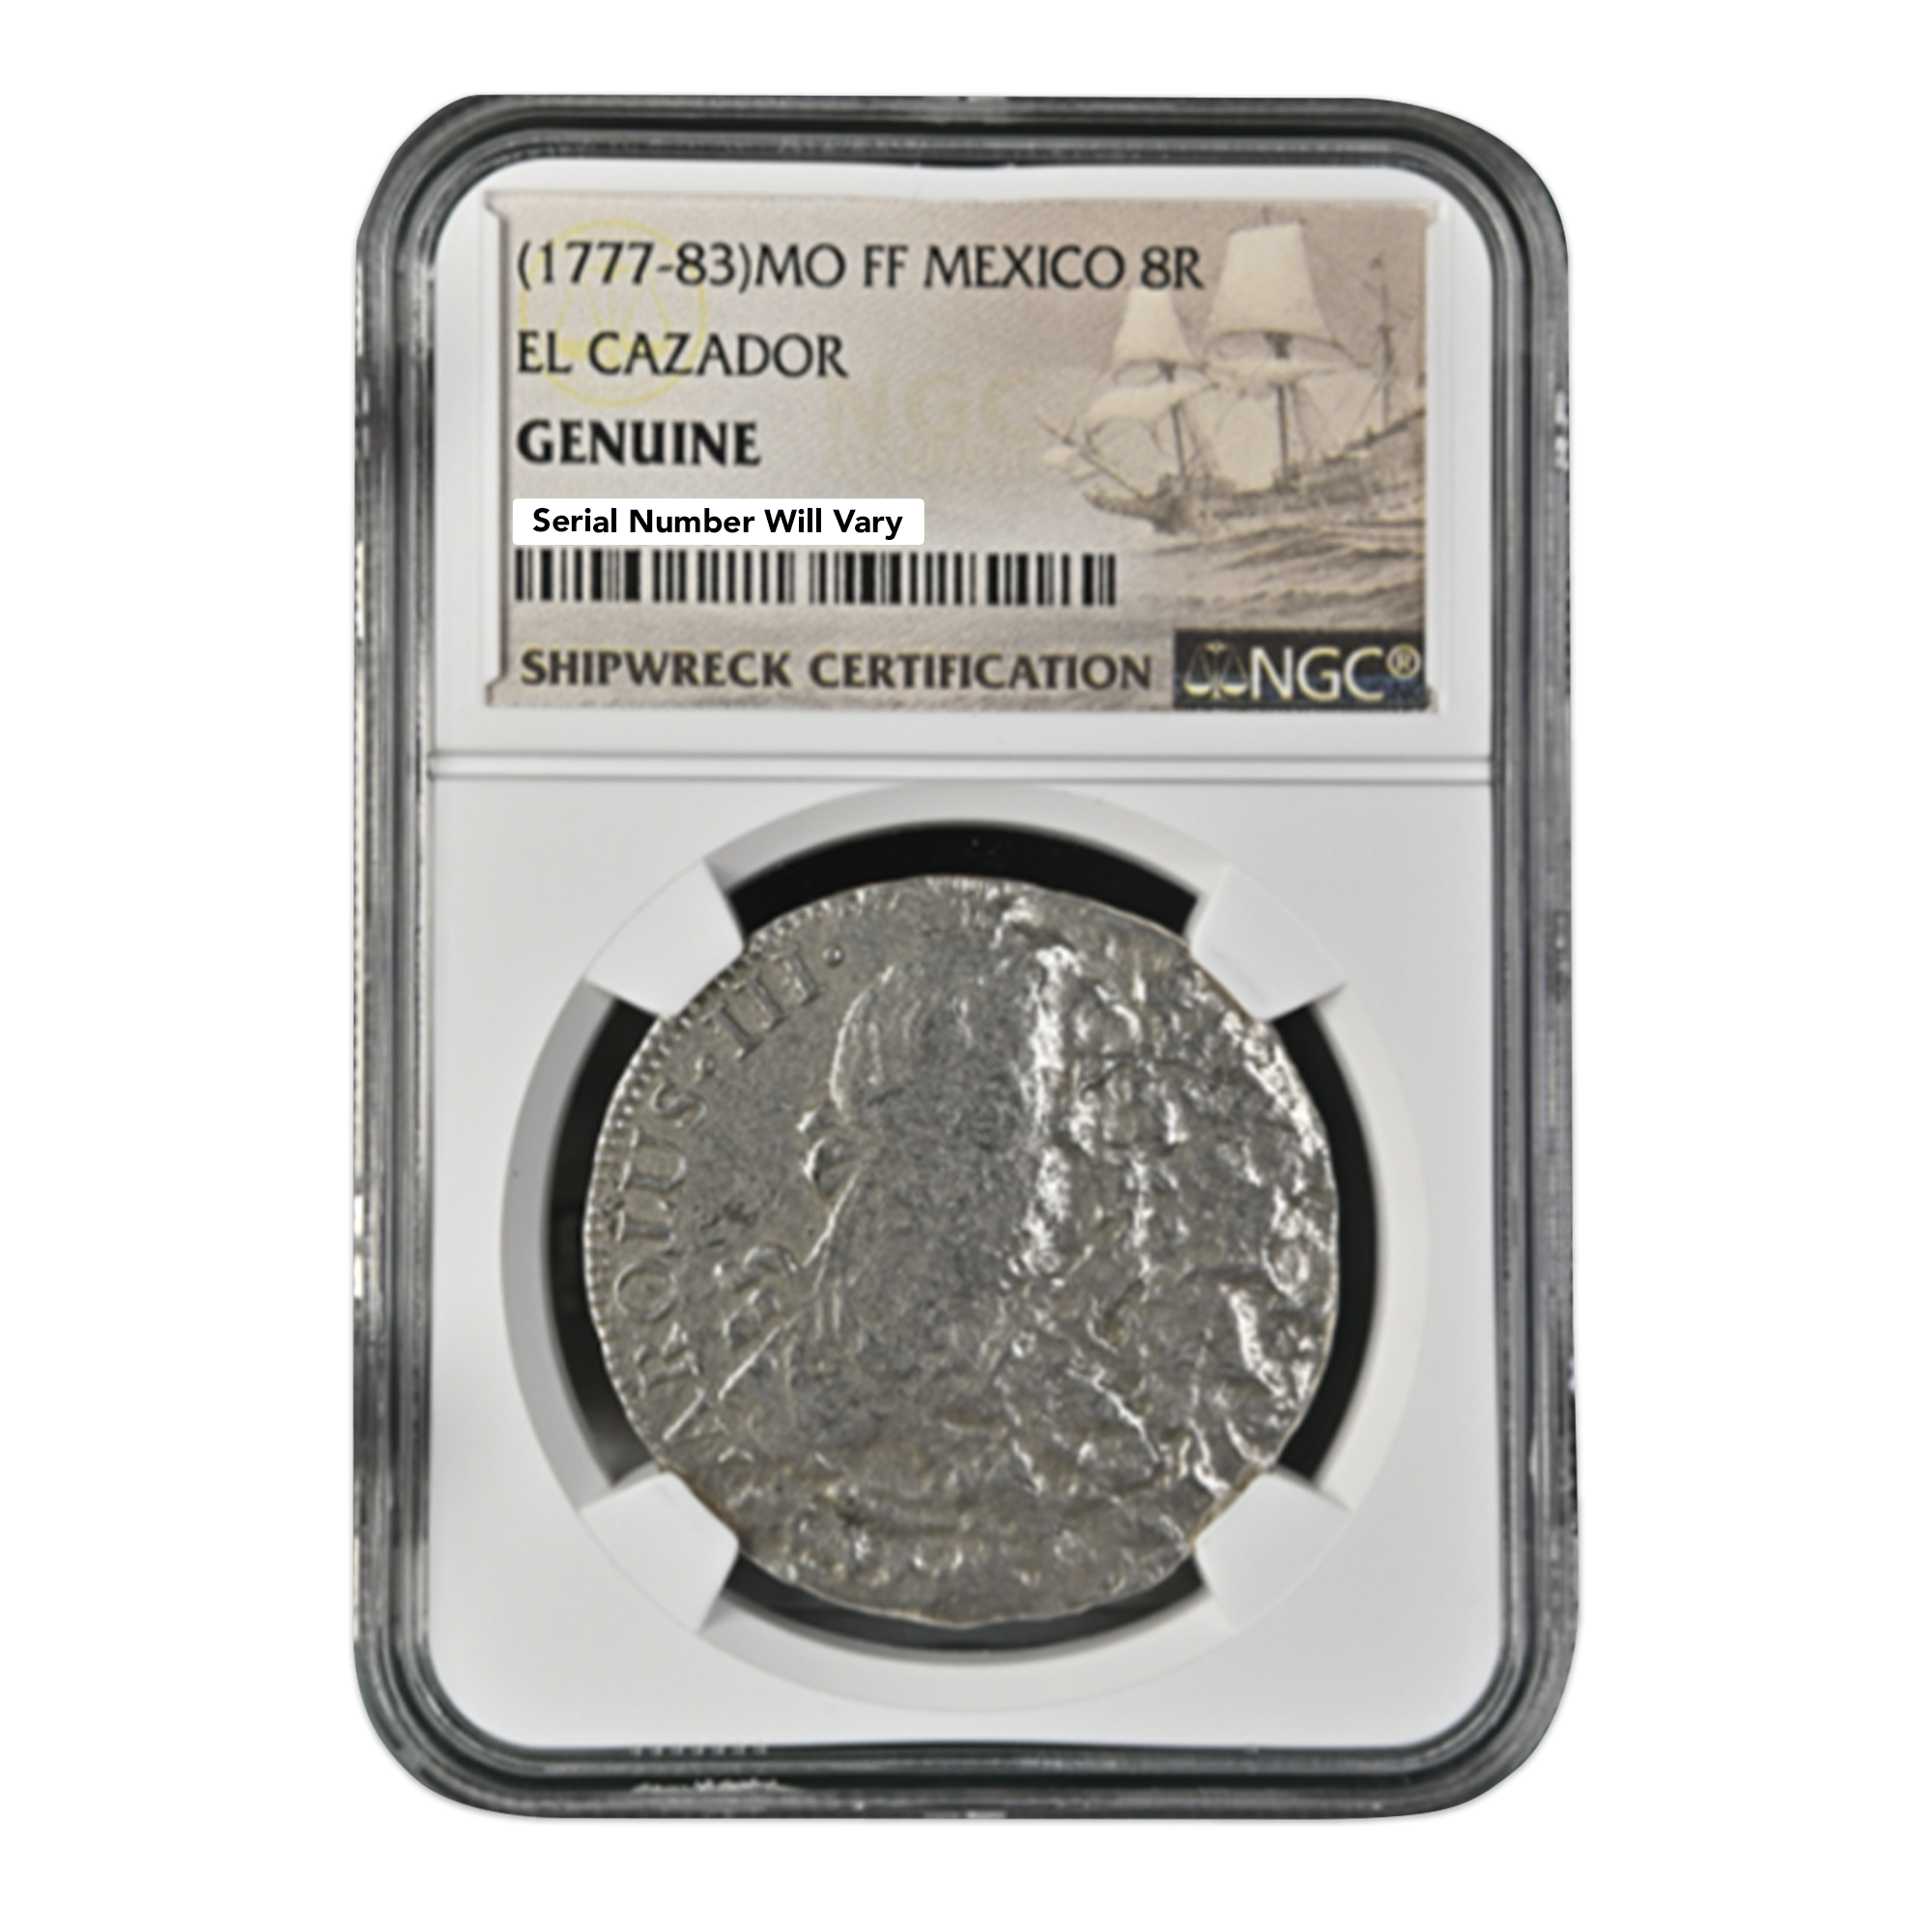 1772-1783) Mexico 8R Silver El Cazador Shipwreck Coin Genuine – CoinsTV